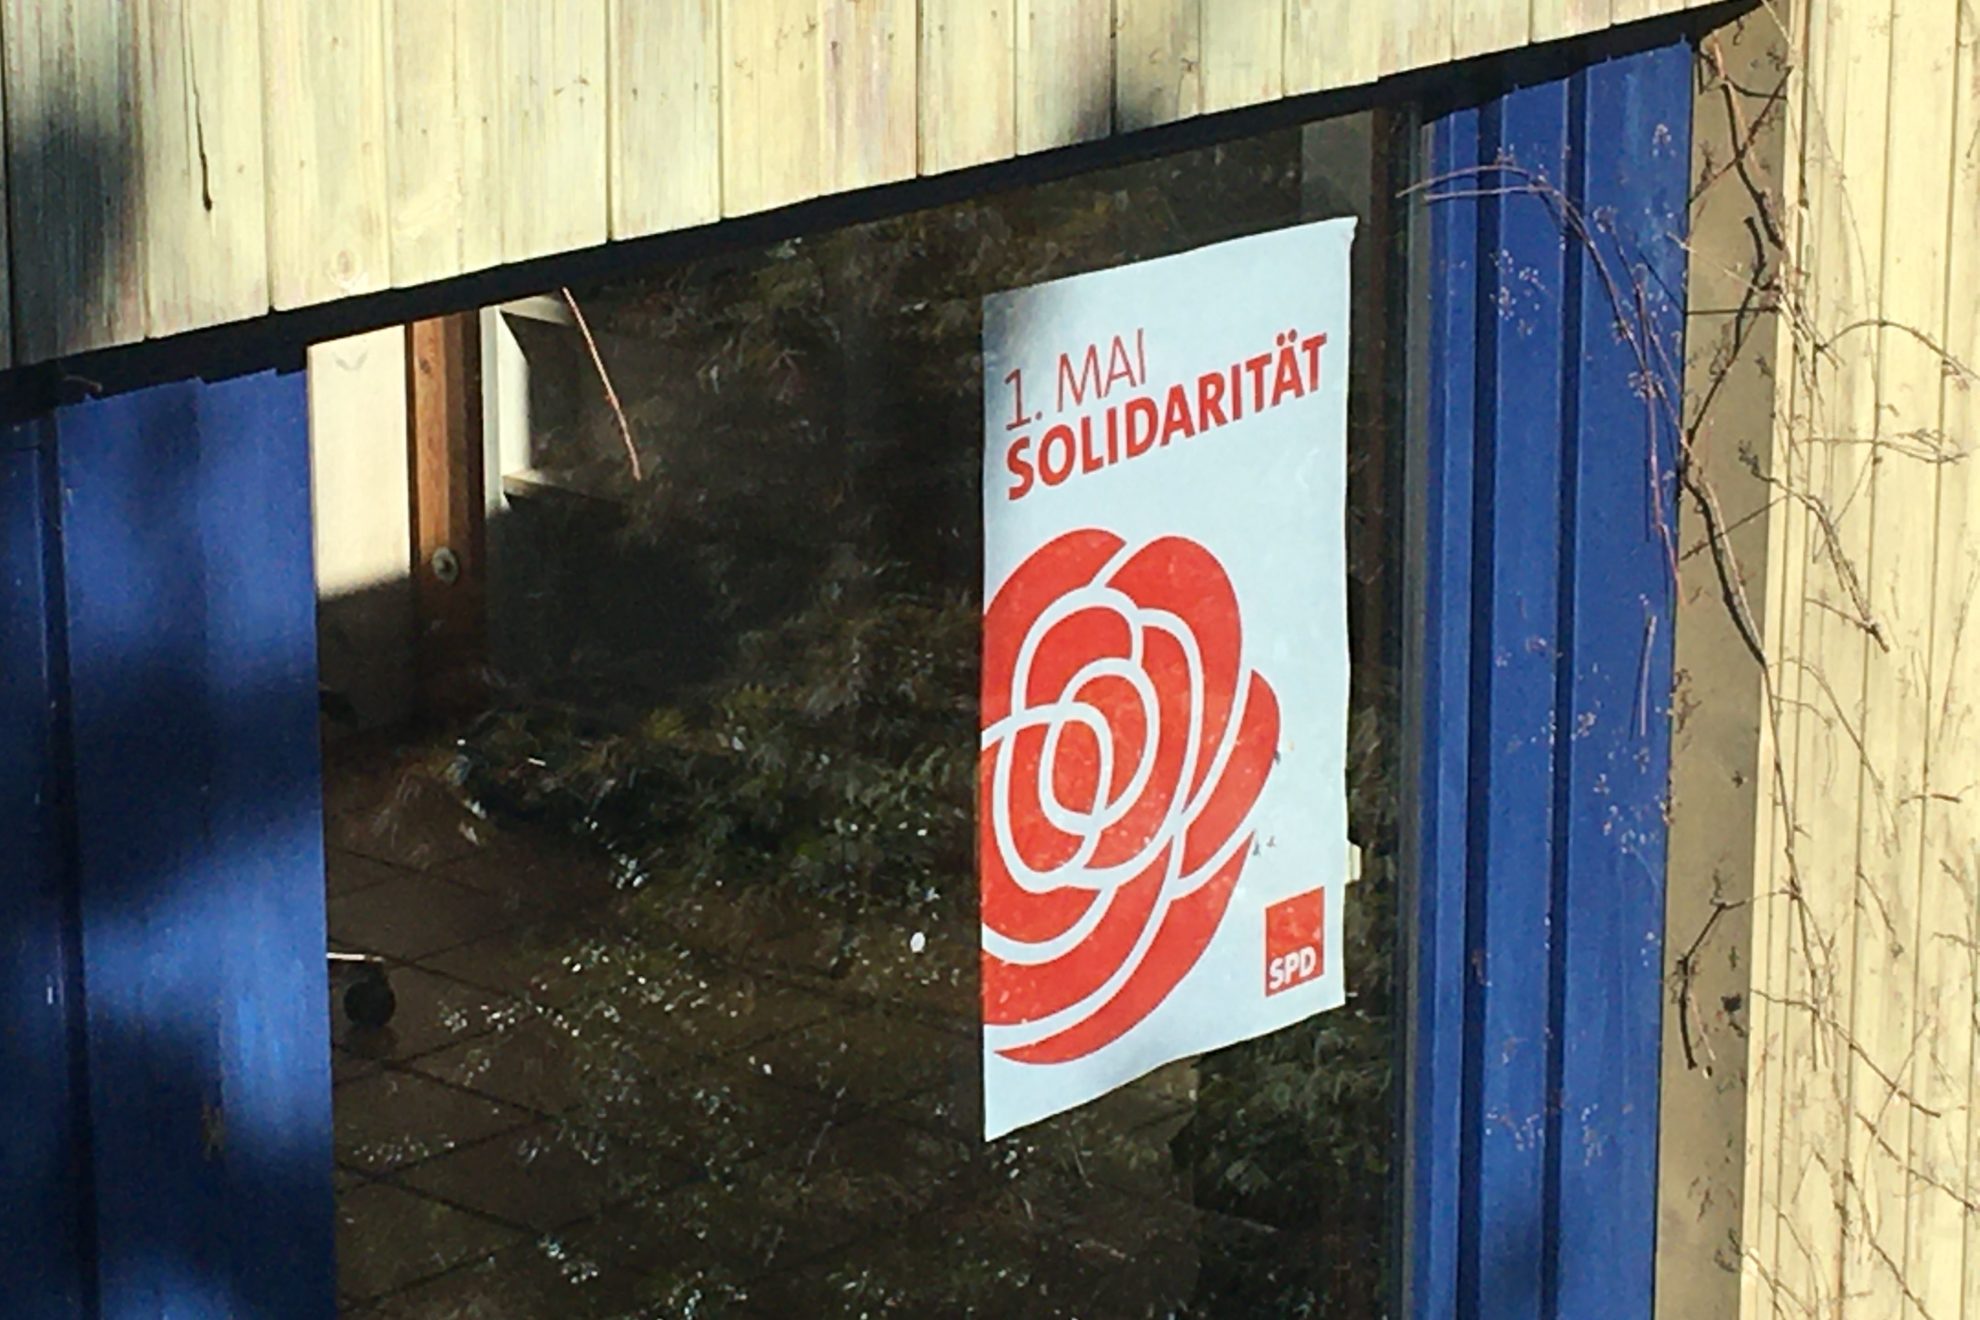 1. Mai Solidarität